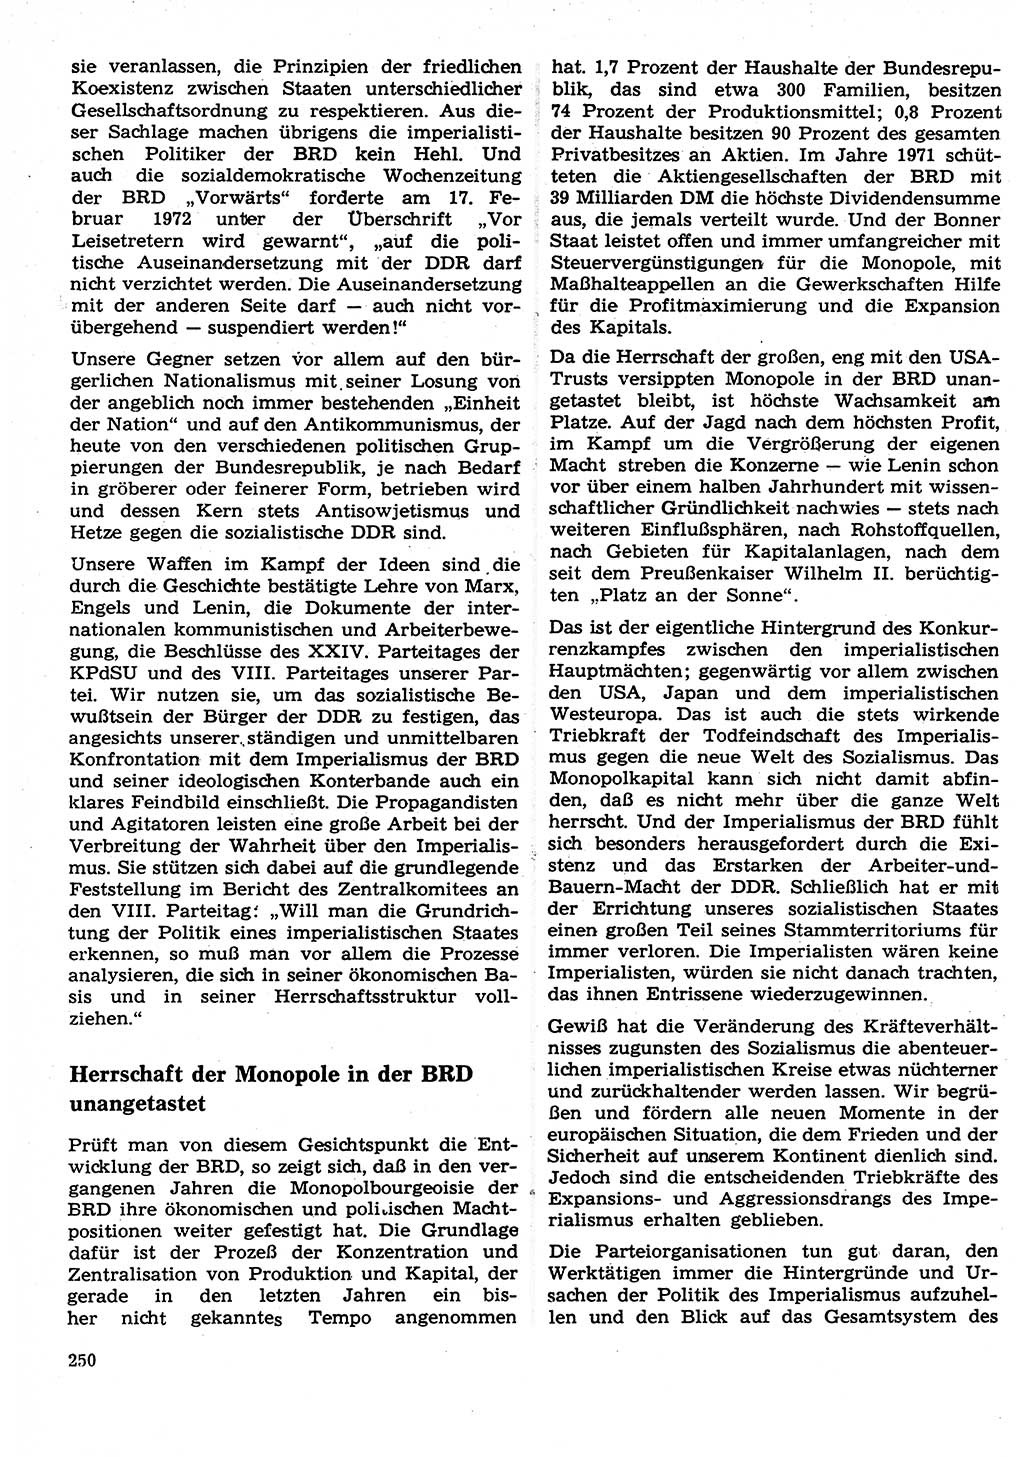 Neuer Weg (NW), Organ des Zentralkomitees (ZK) der SED (Sozialistische Einheitspartei Deutschlands) für Fragen des Parteilebens, 27. Jahrgang [Deutsche Demokratische Republik (DDR)] 1972, Seite 250 (NW ZK SED DDR 1972, S. 250)